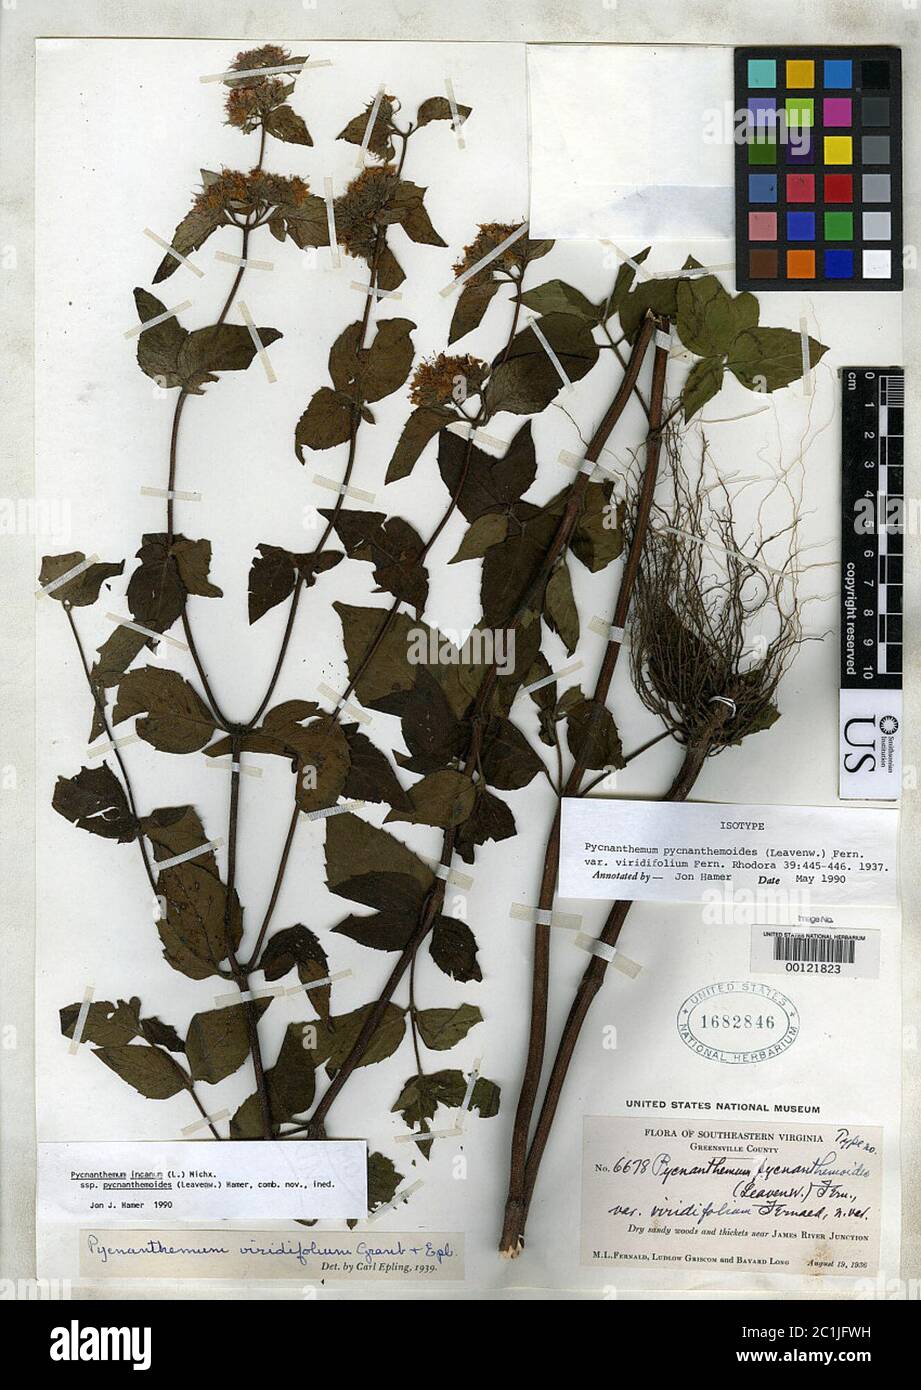 Pycnanthemum pycnanthemoides var viridifolium Fernald Pycnanthemum pycnanthemoides var viridifolium Fernald. Stock Photo